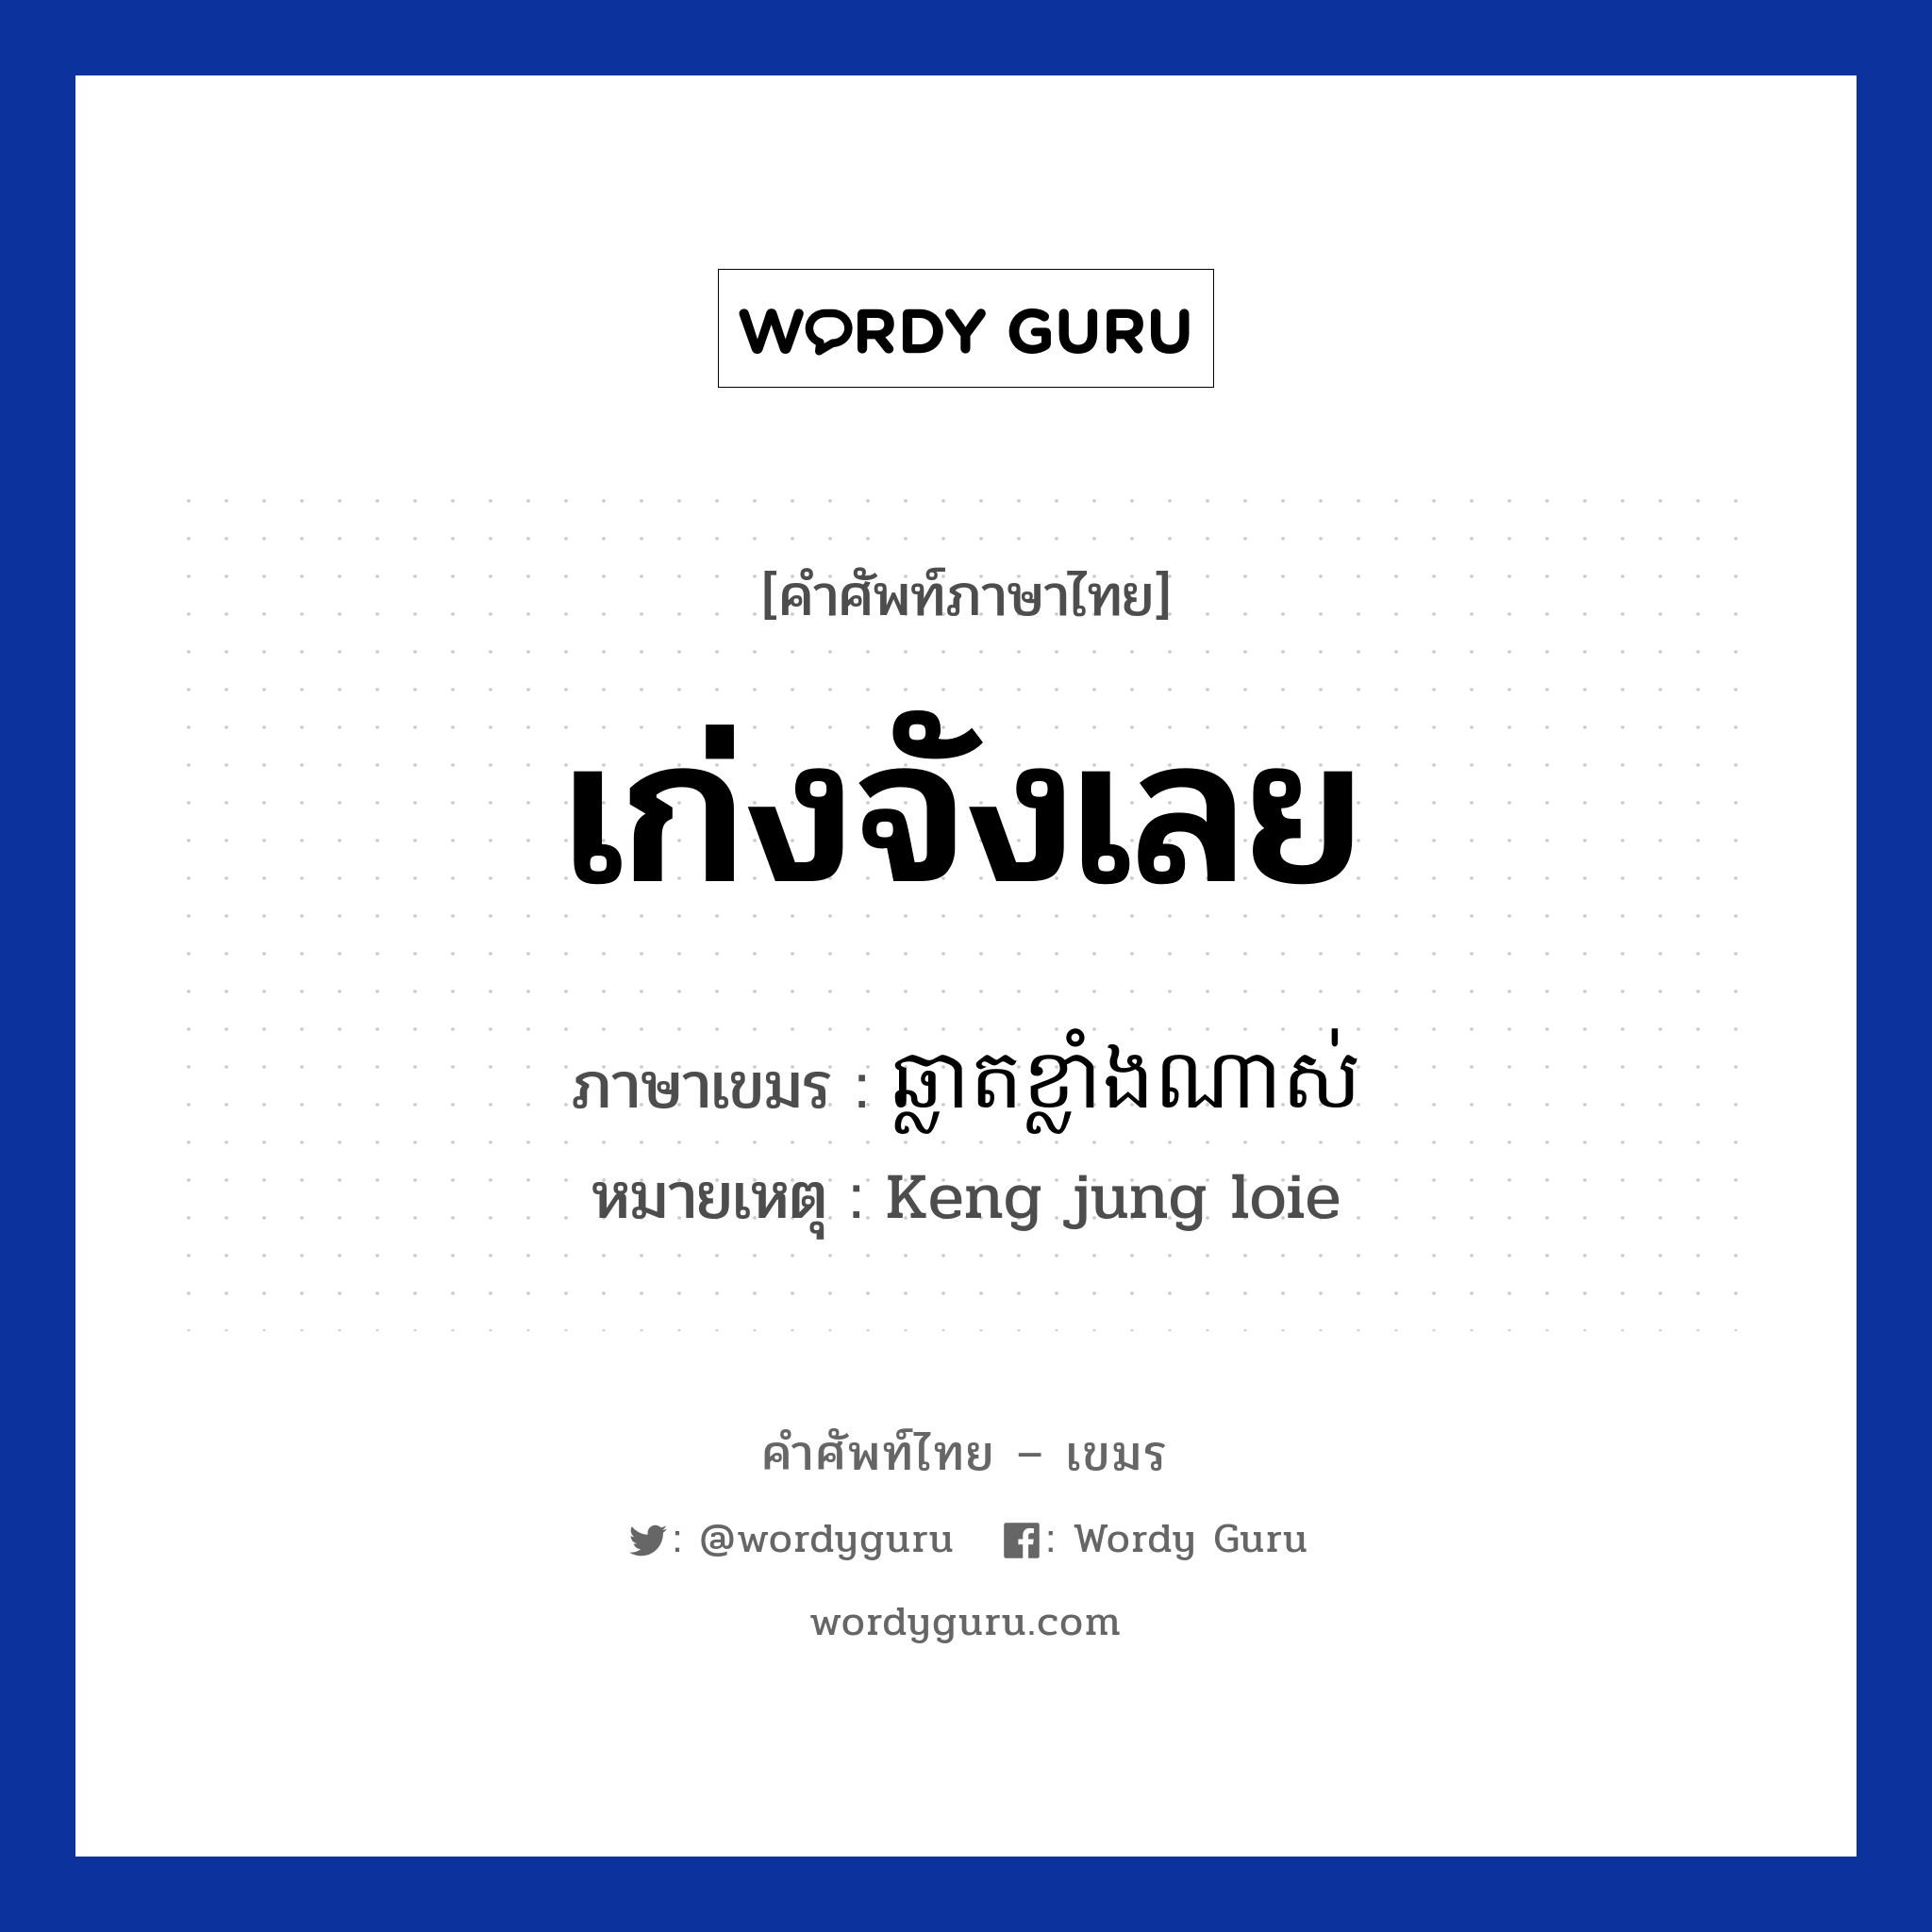 เก่งจังเลย ภาษาเขมรคืออะไร, คำศัพท์ภาษาไทย - เขมร เก่งจังเลย ภาษาเขมร ឆ្លាតខ្លាំងណាស់ หมวด คำชม หมายเหตุ Keng jung loie Chlat Klang Nas หมวด คำชม